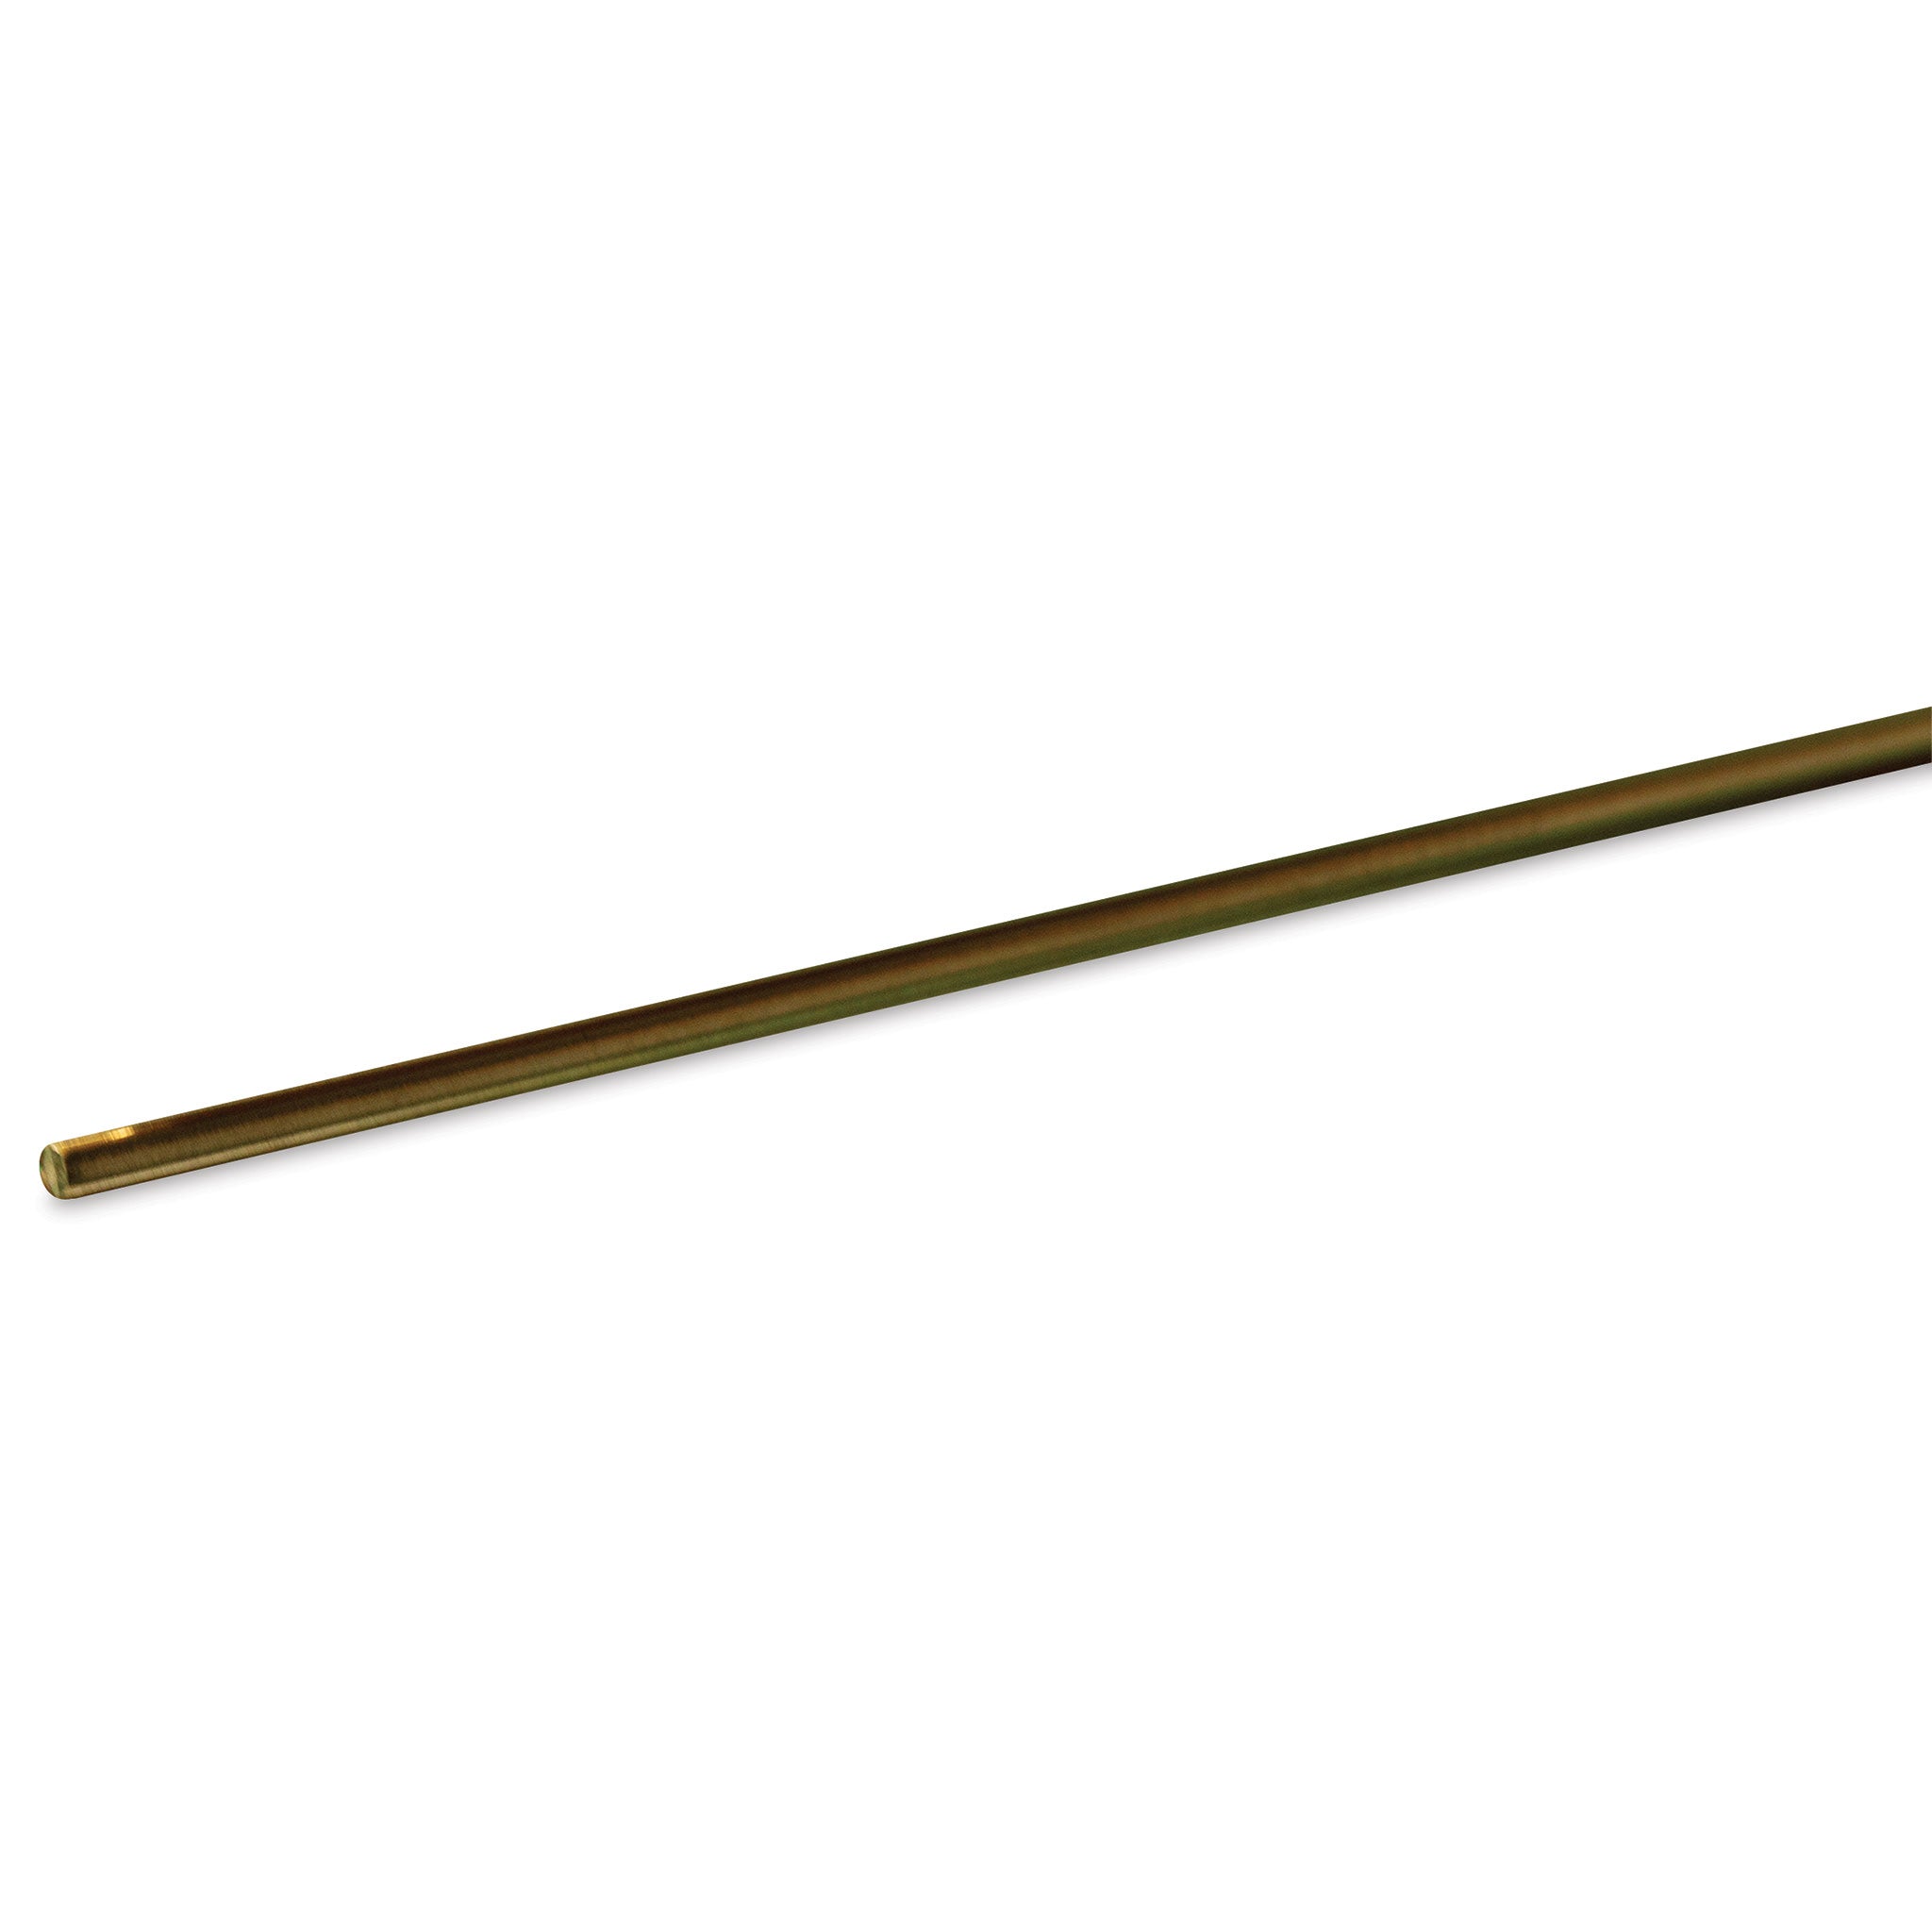 K&S Metals 1160 Round Brass Rod 1/16" OD x 36" Long (1 Piece)